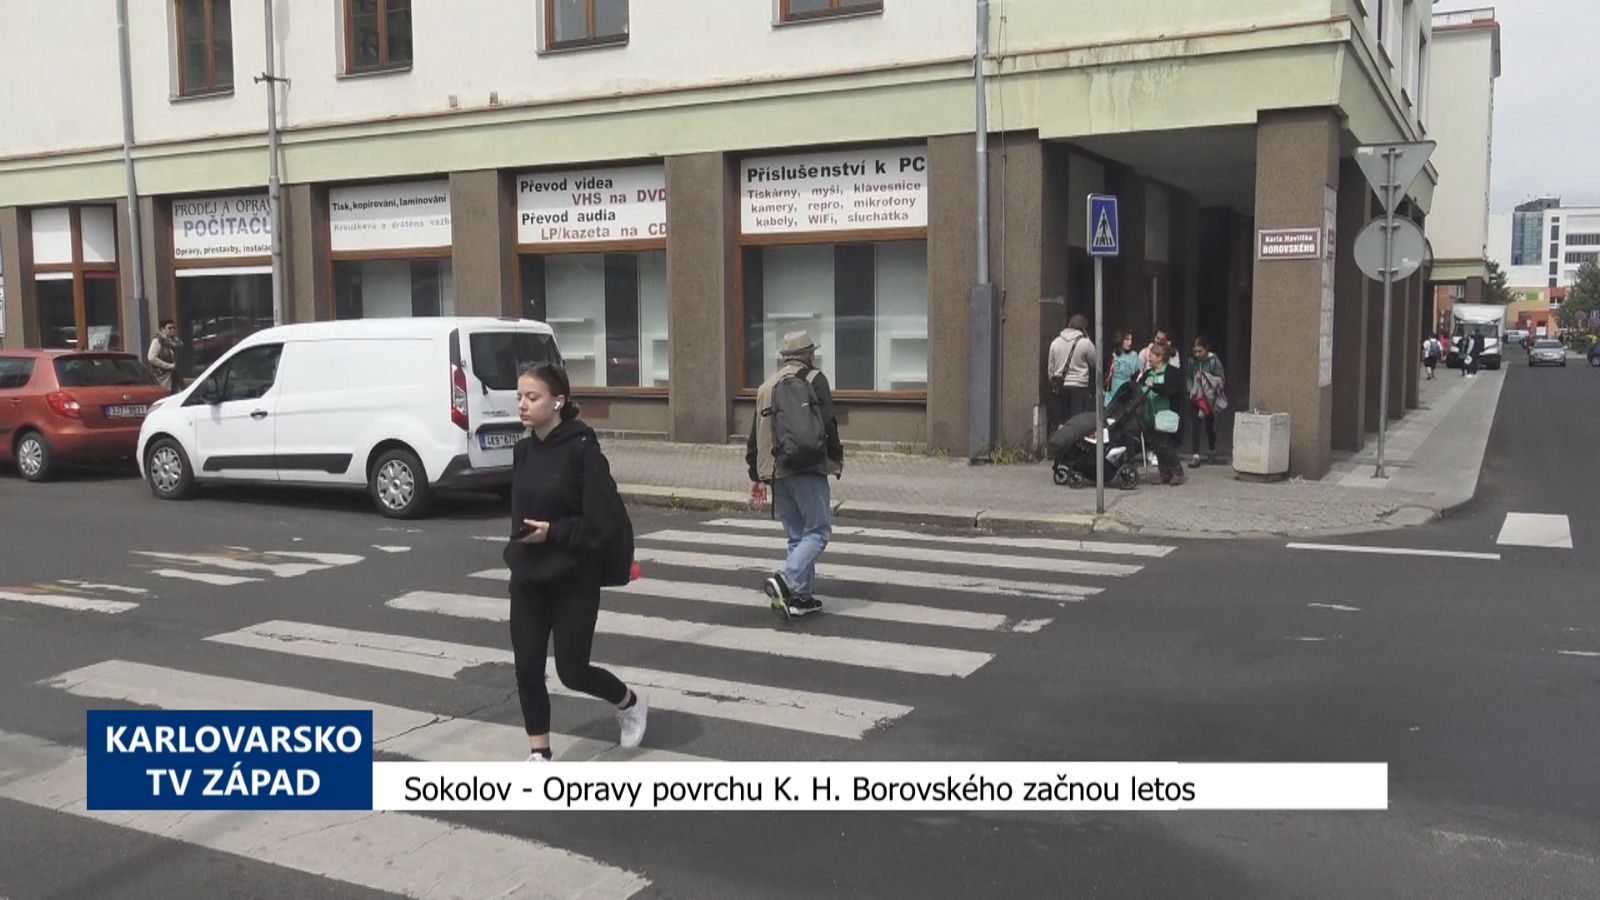 Sokolov: Opravy povrchu K. H. Borovského začnou letos (TV Západ)